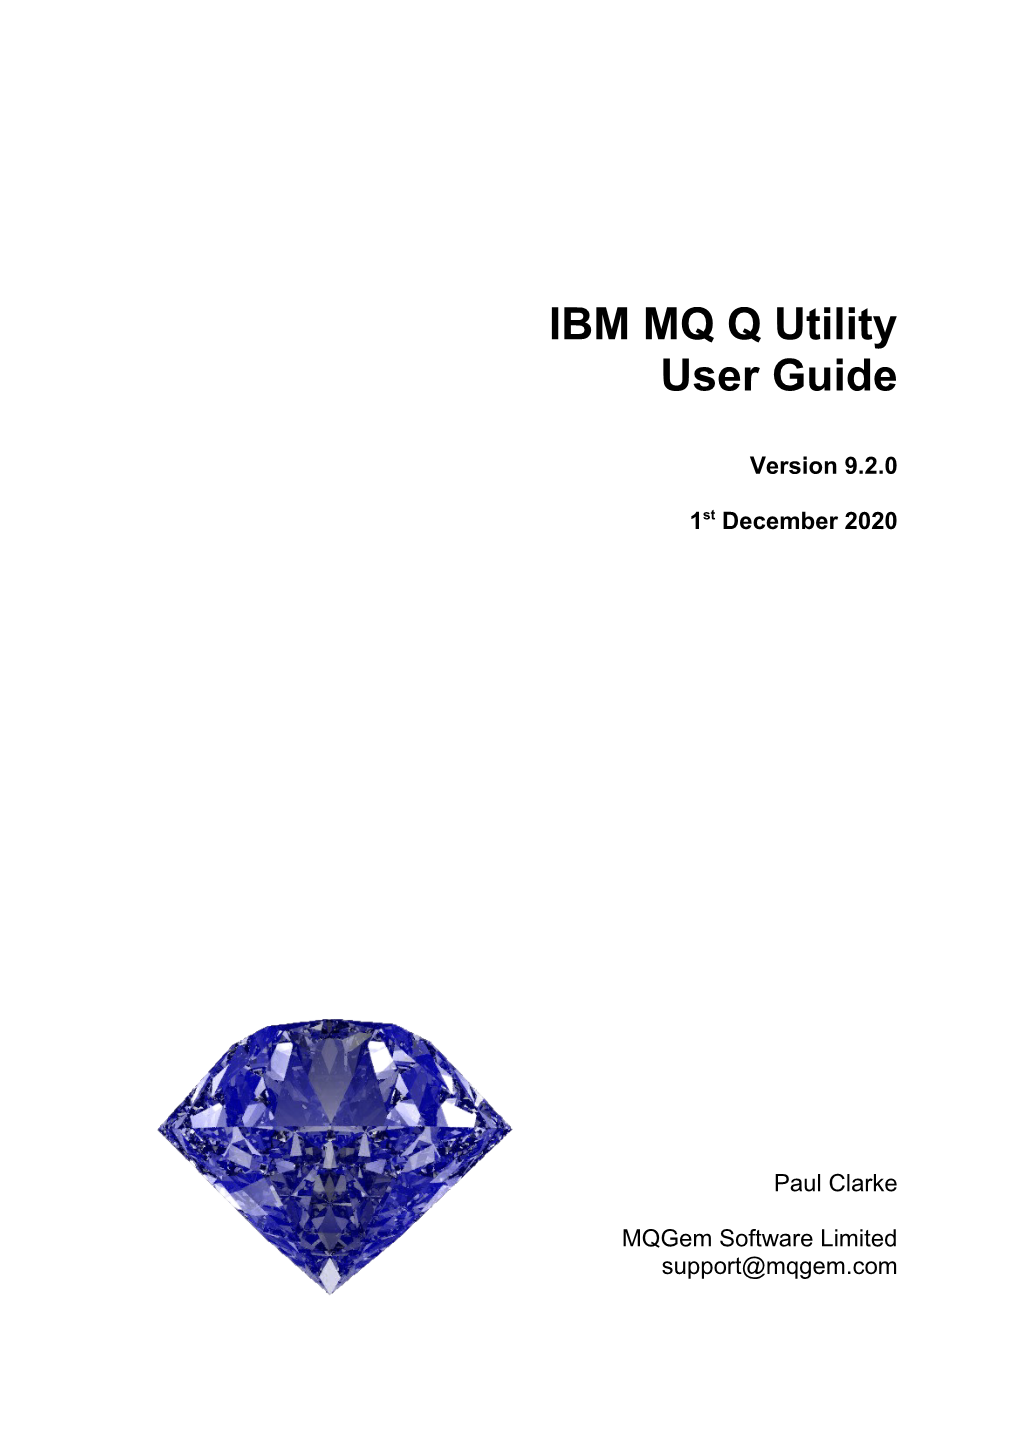 IBM MQ Q Utility User Guide